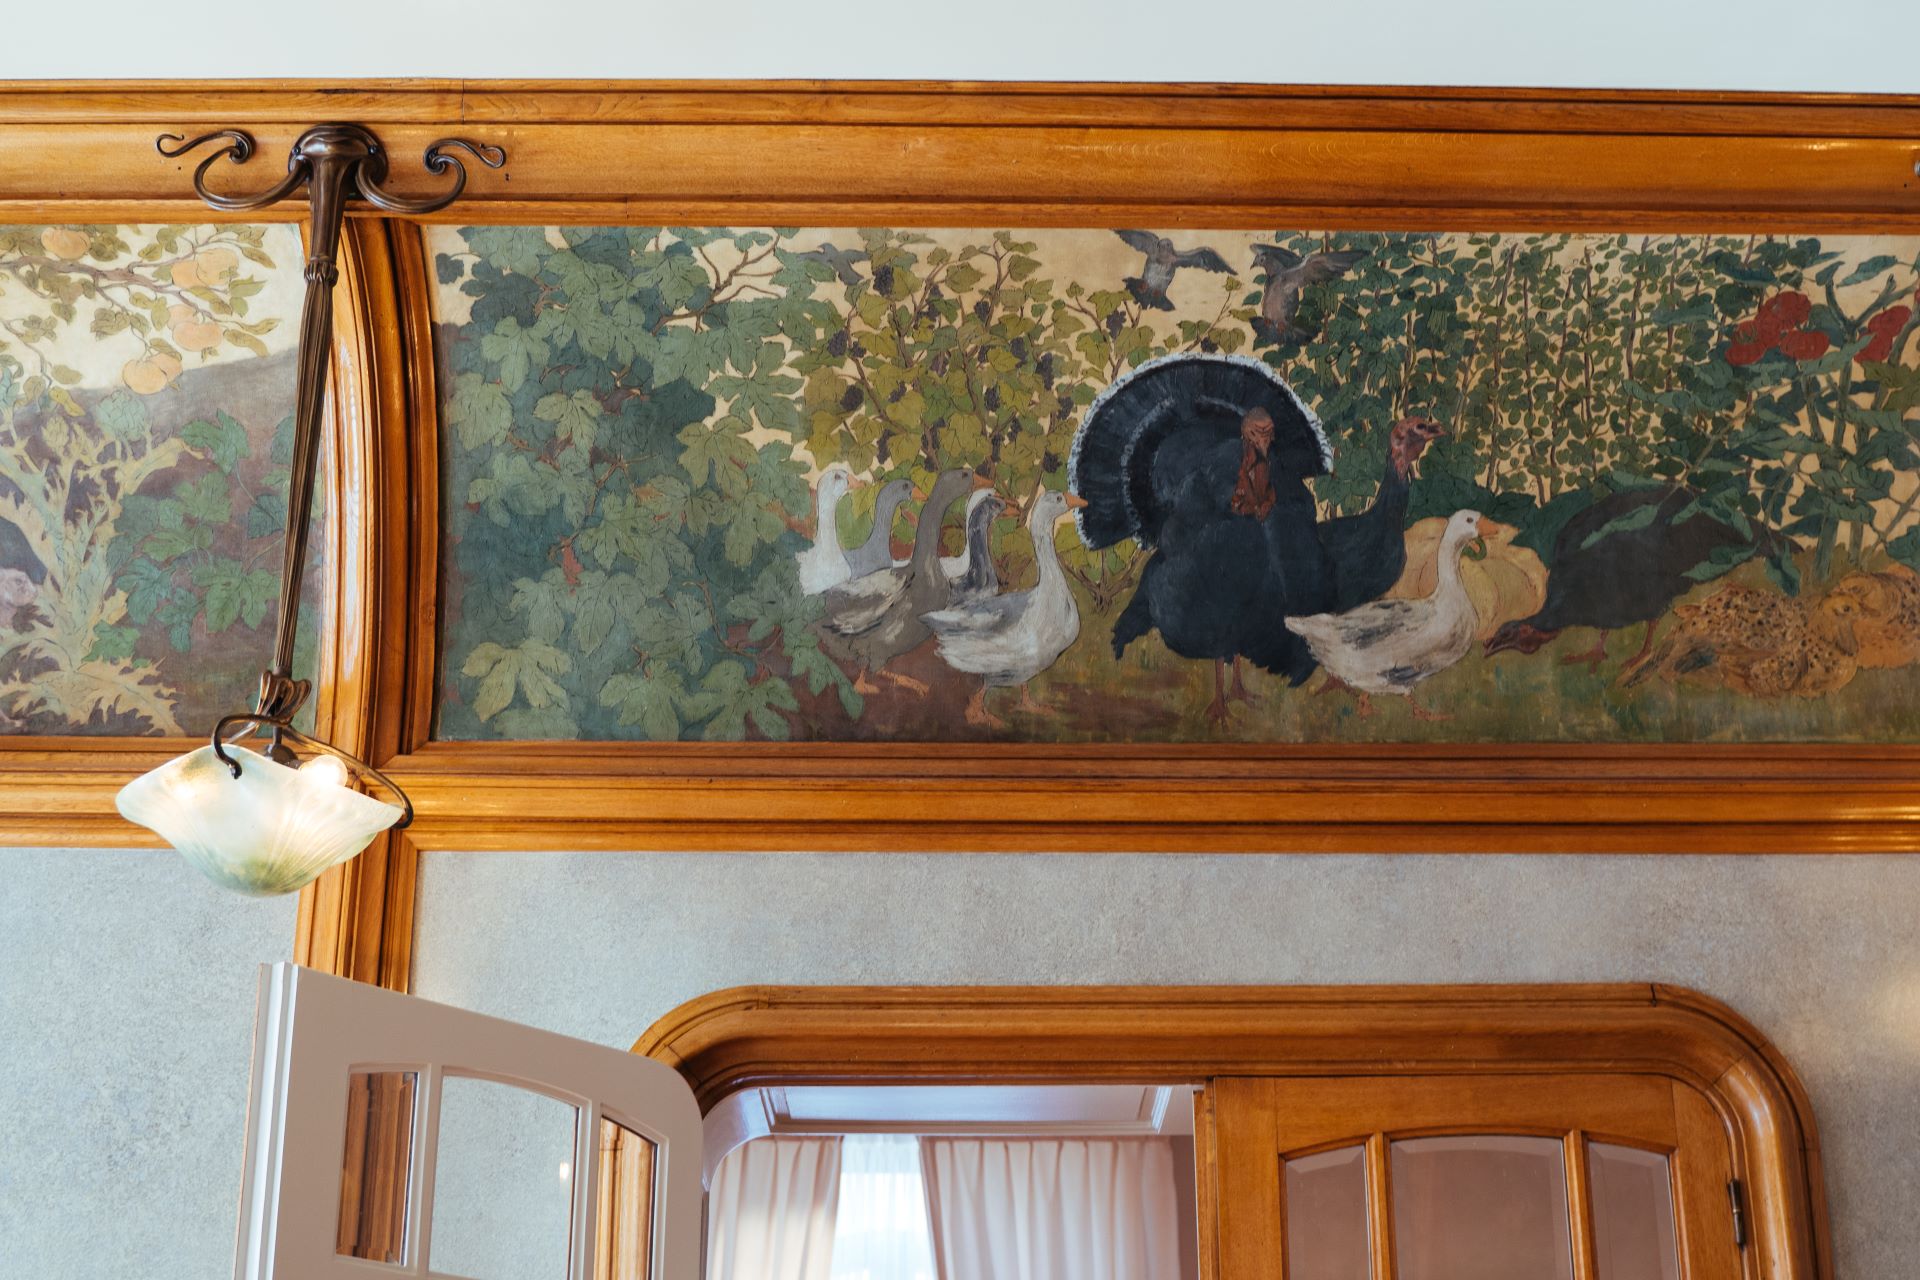 À l'intérieur du bâtiment, l'influence de la nature se fait clairement sentir. Un vieux tableau montre une volée d'oiseaux sauvages, et le tableau est entouré de formes naturelles en bois.